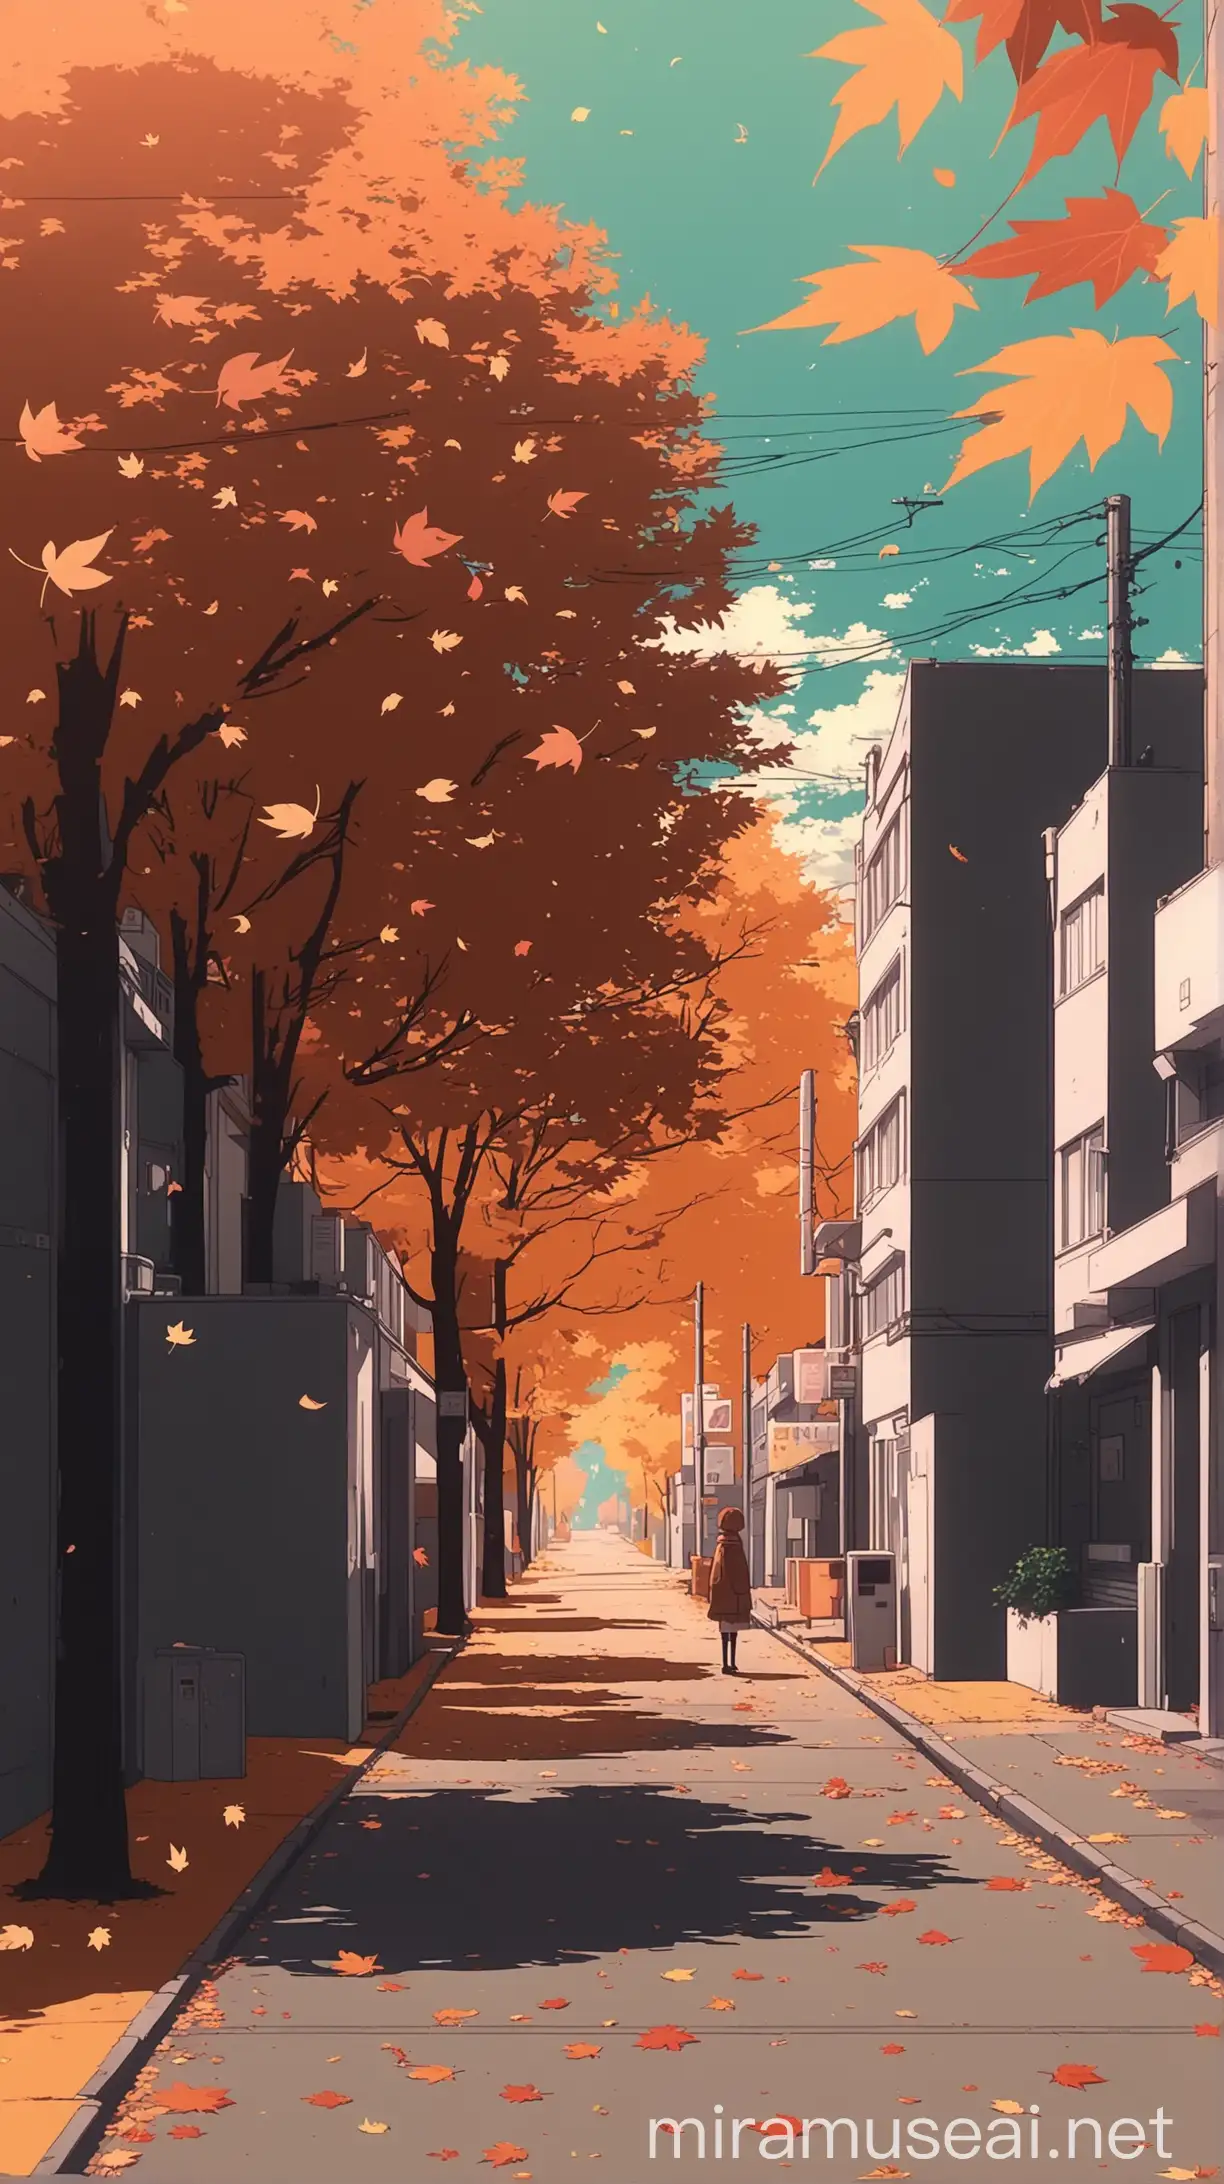 Anime Aesthetic Digital Art Fall Street Scene with Leaves